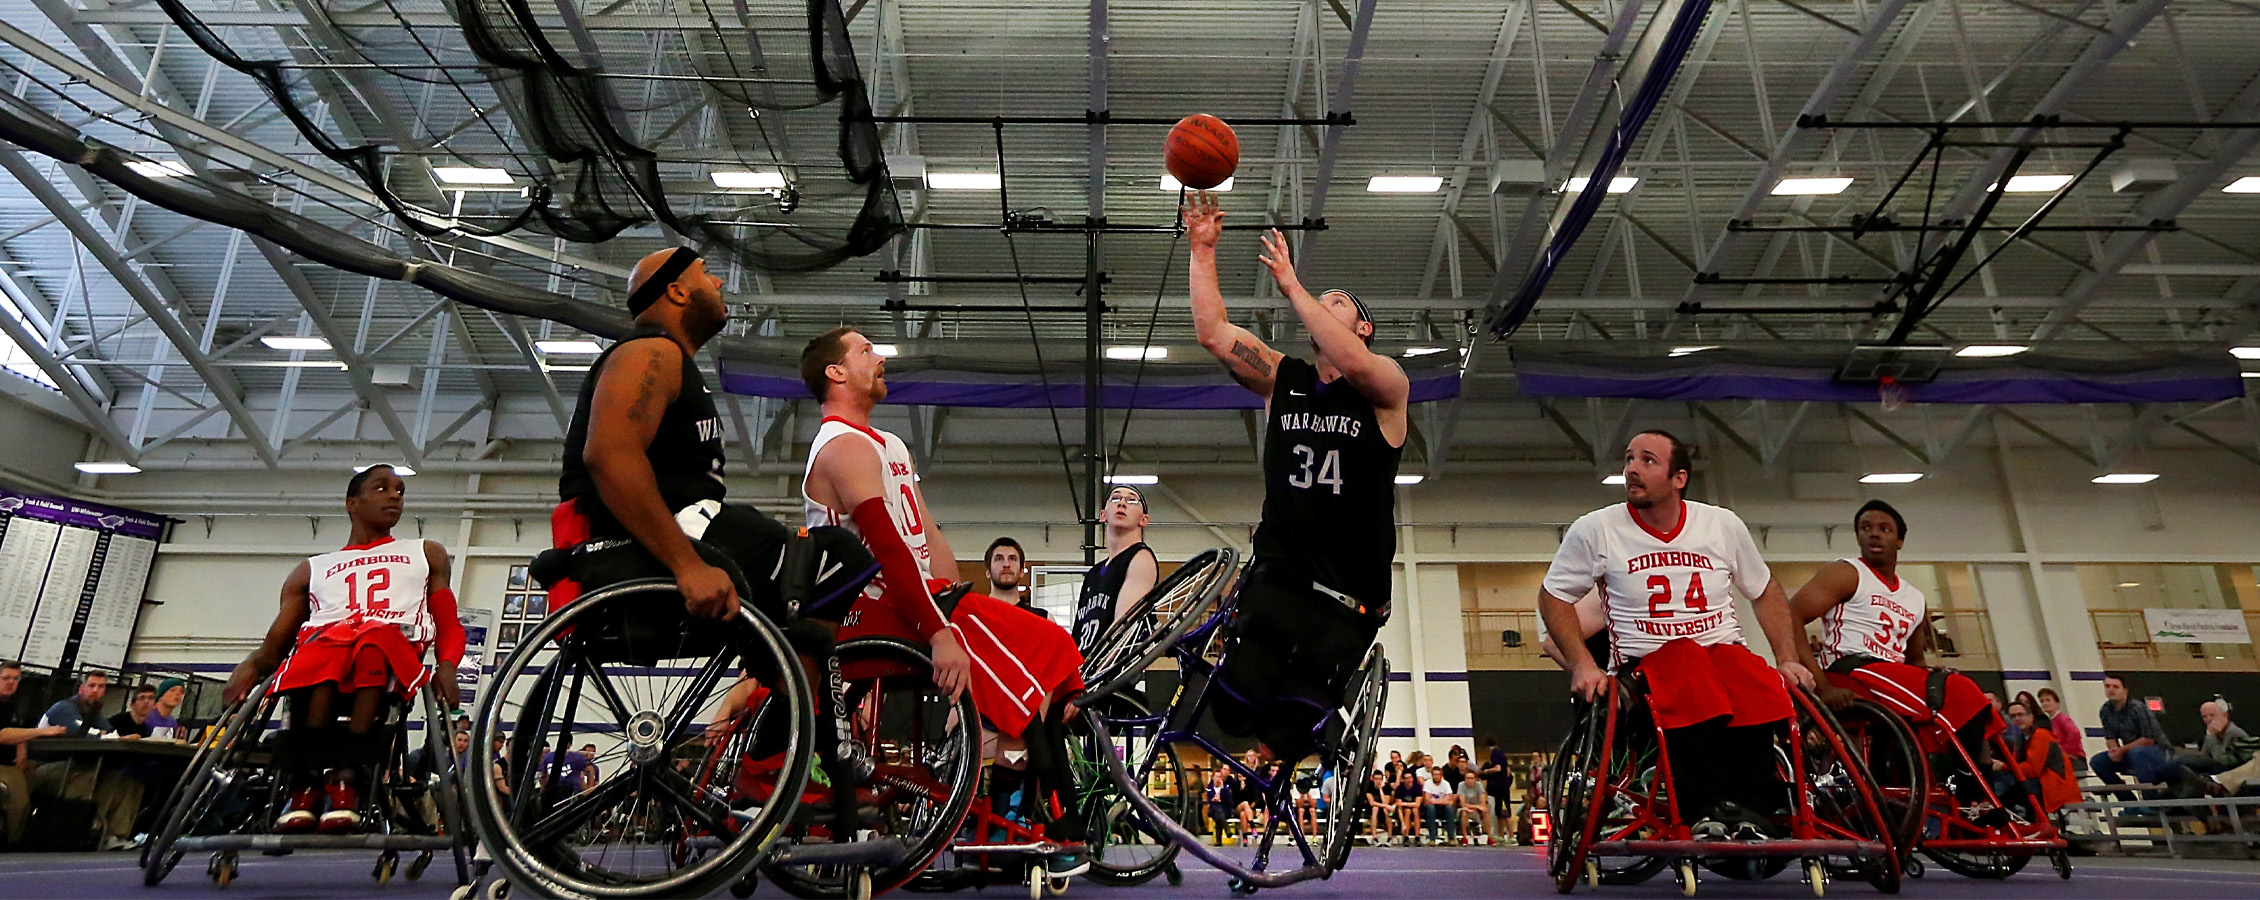 A Warhawk men's wheelchair basketball player shoots the ball.